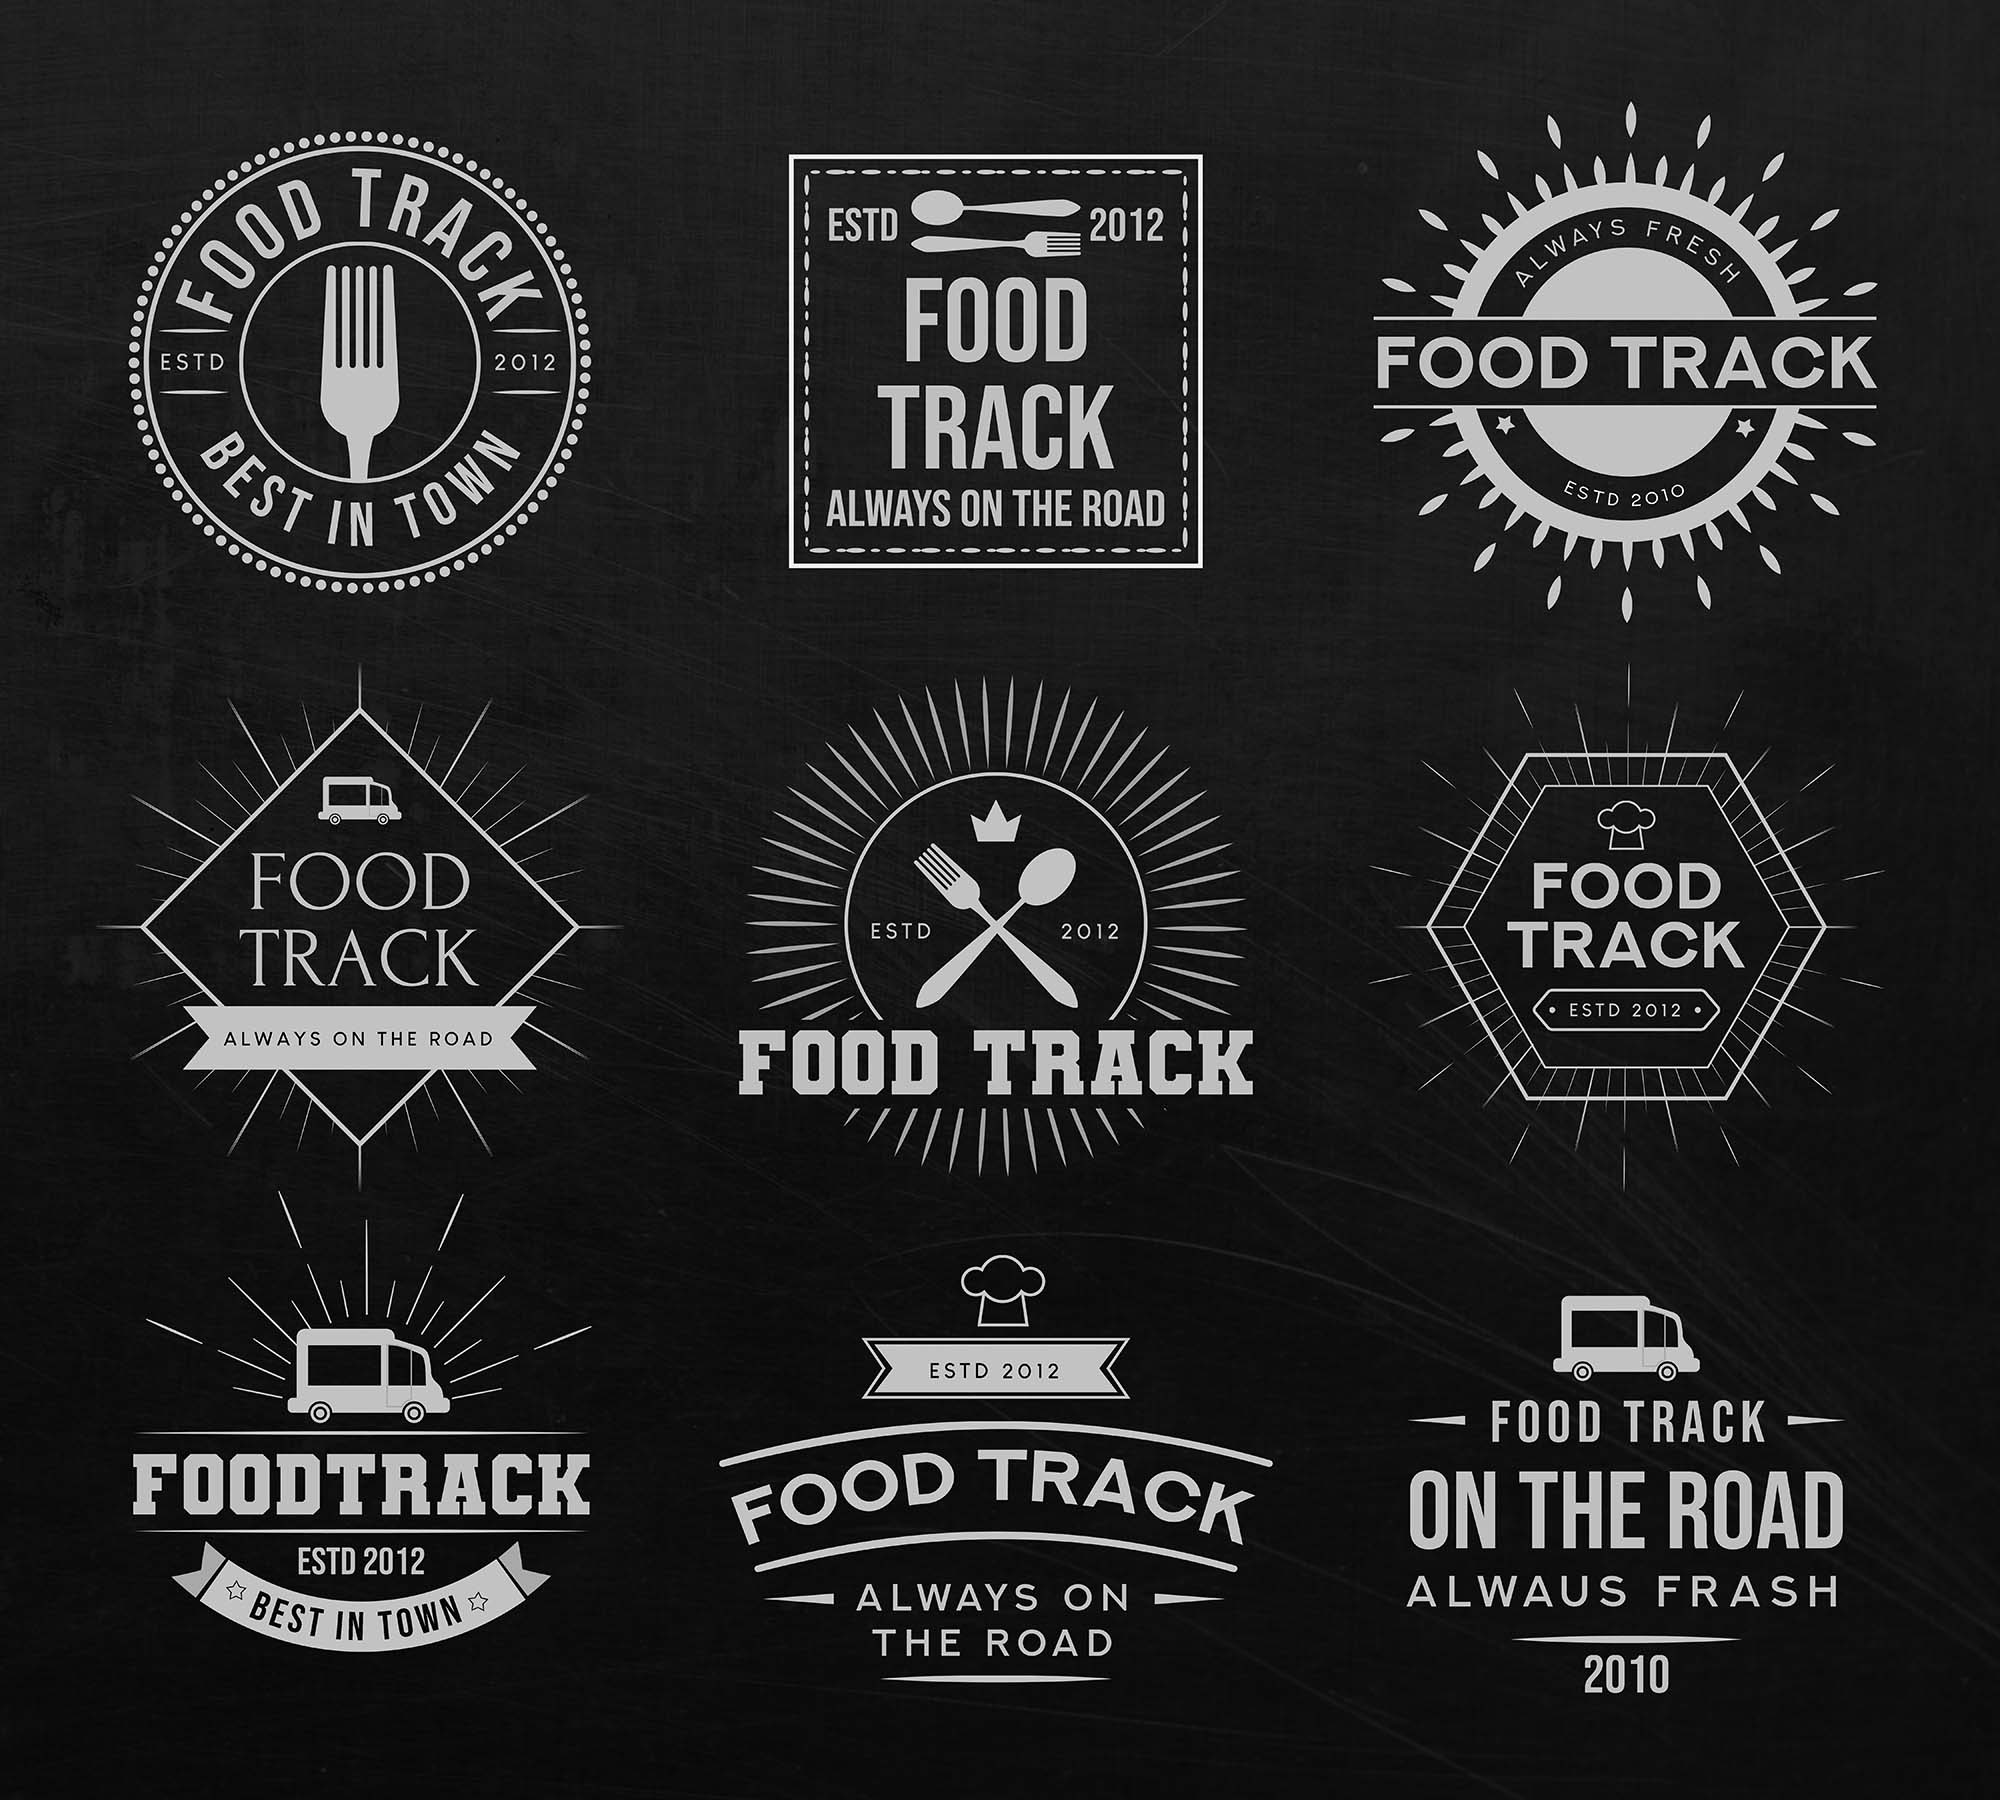 Free Food Track Logo Templates PSD Ai files